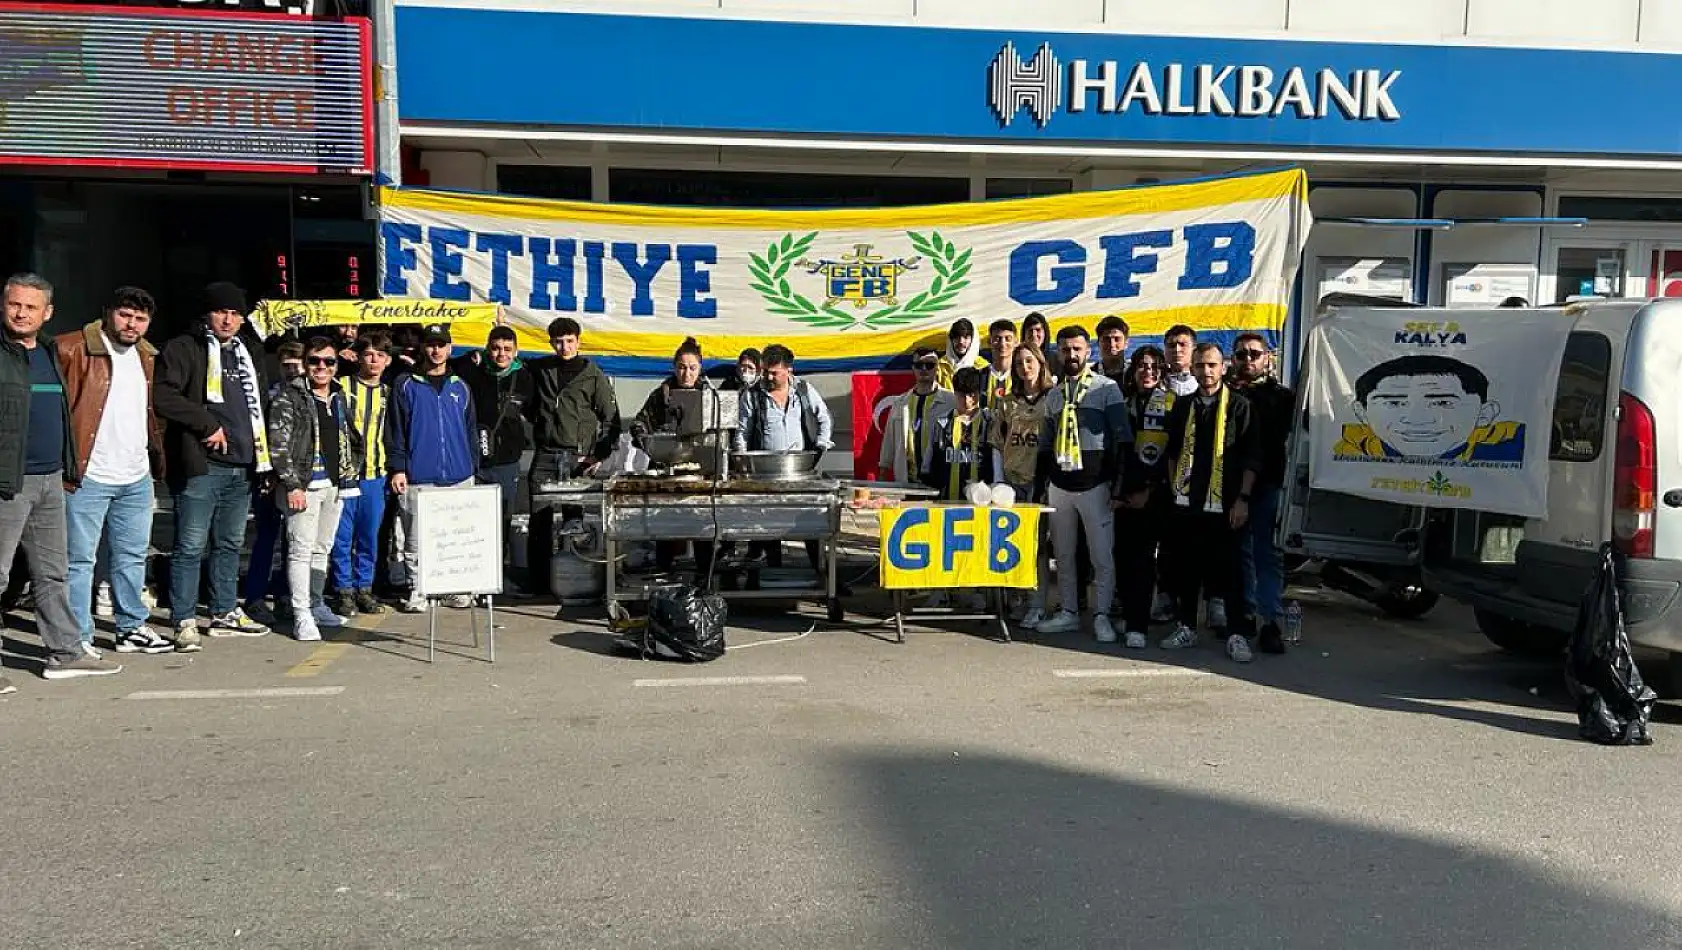 GFB Fethiye'den Şehitler ve Tribün Lideri Sefa Kalya için lokma hayrı